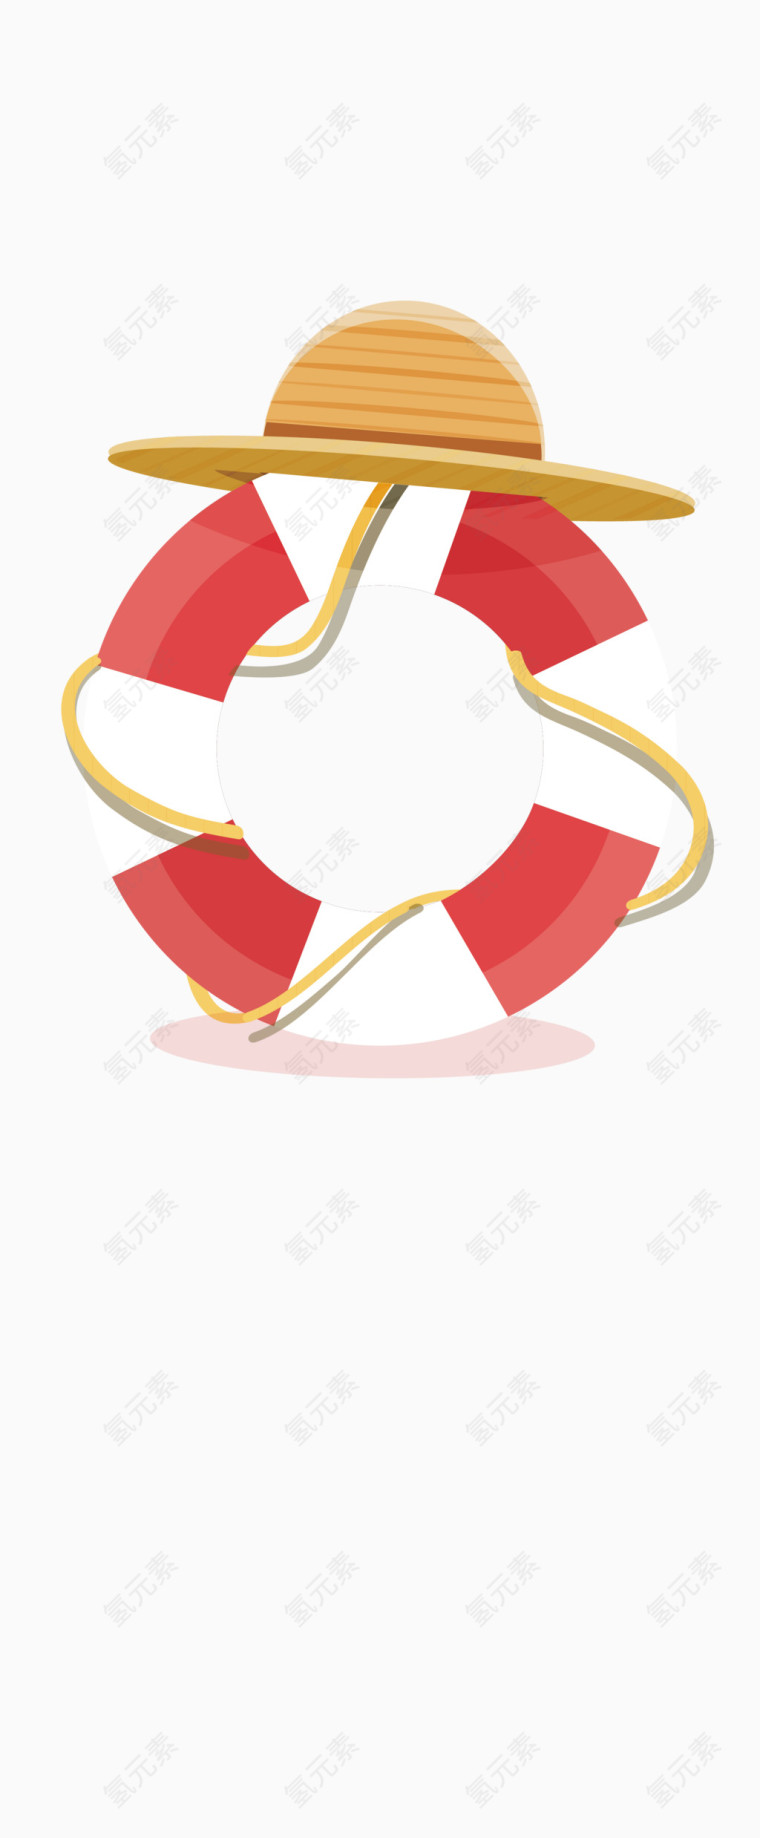 矢量图游泳圈红白条纹沙滩帽